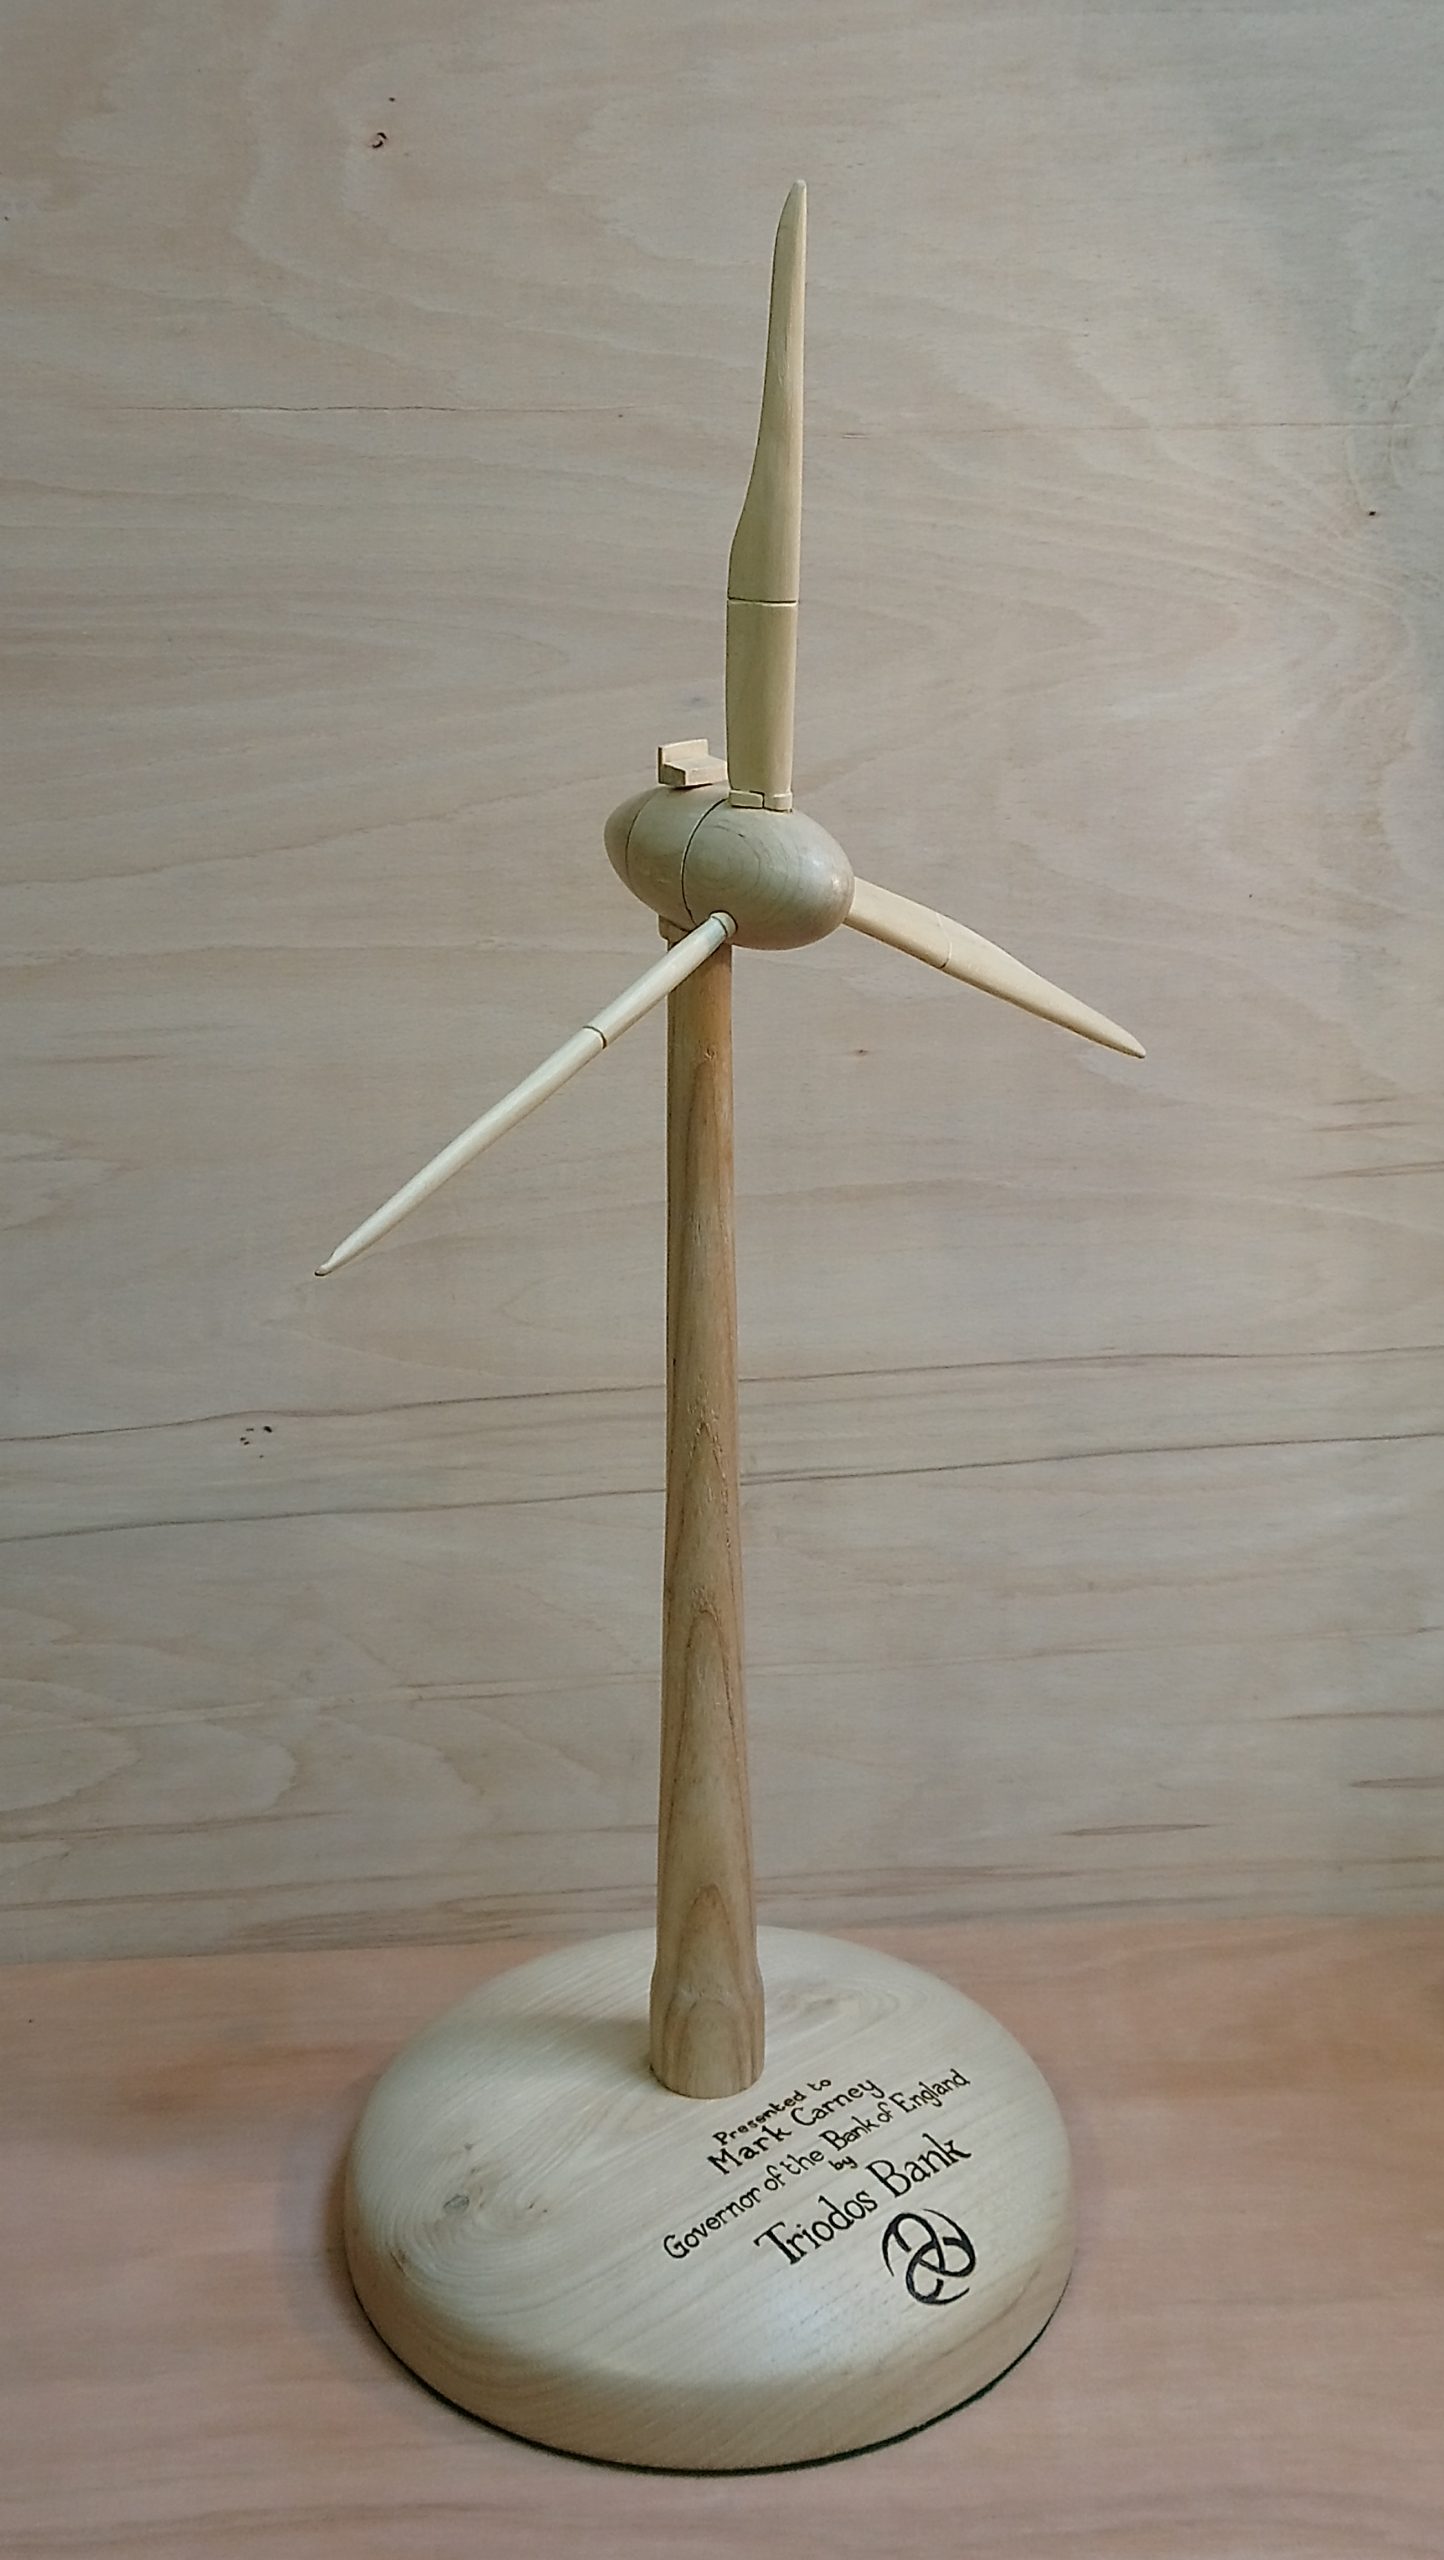 Enercon E-111 wind turbine model